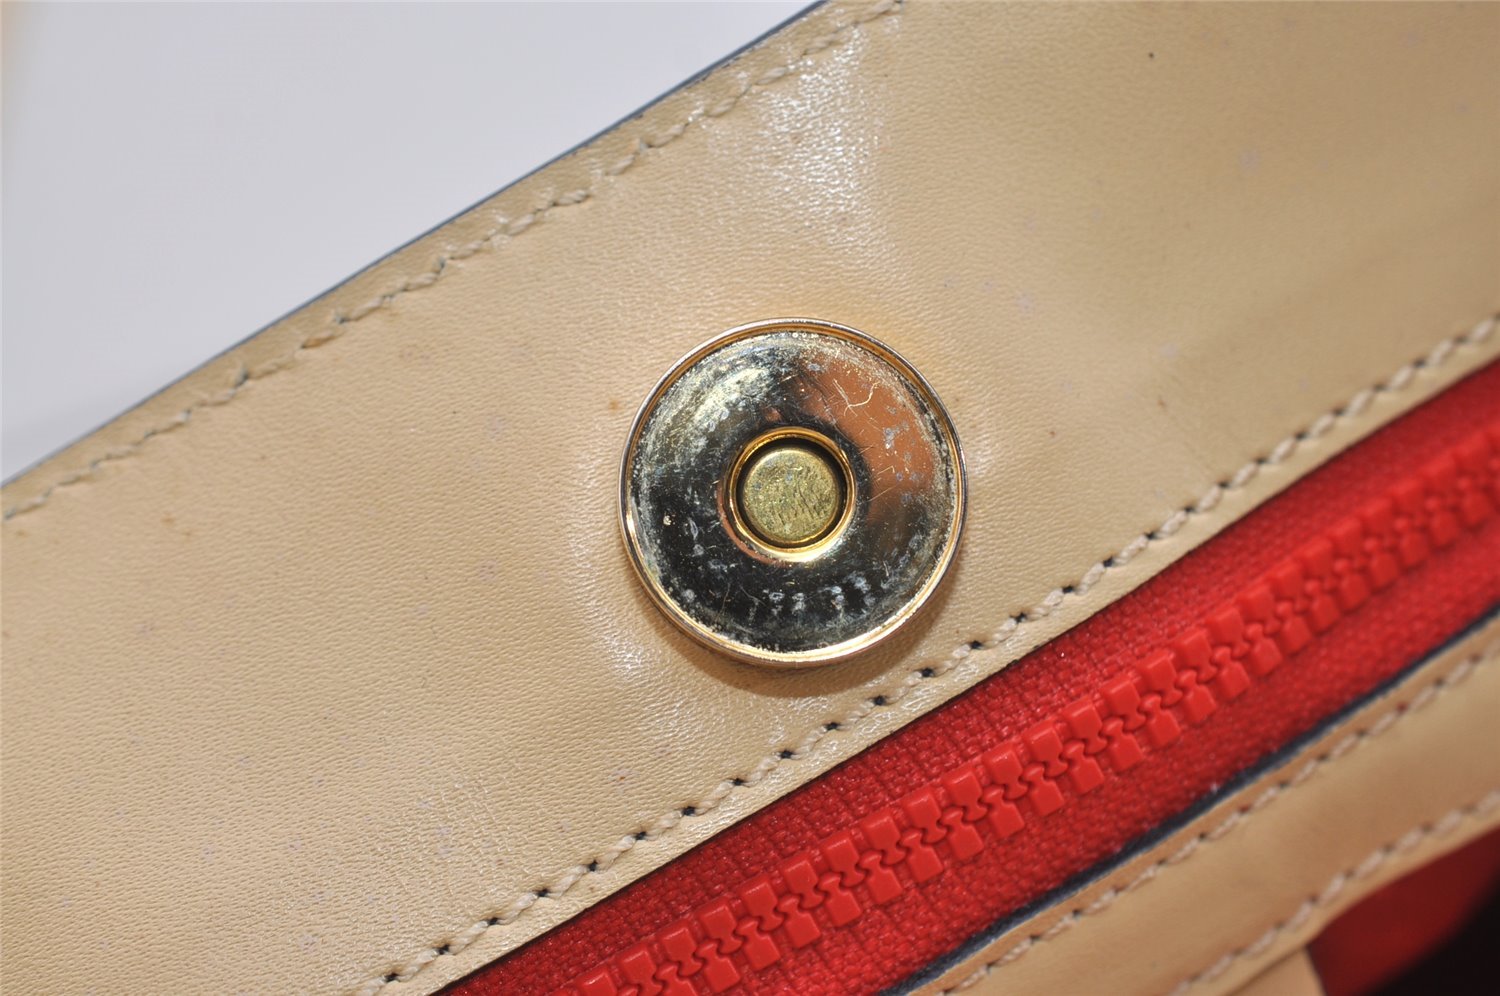 Authentic CELINE Vintage Shoulder Tote Bag Leather Beige 4620J